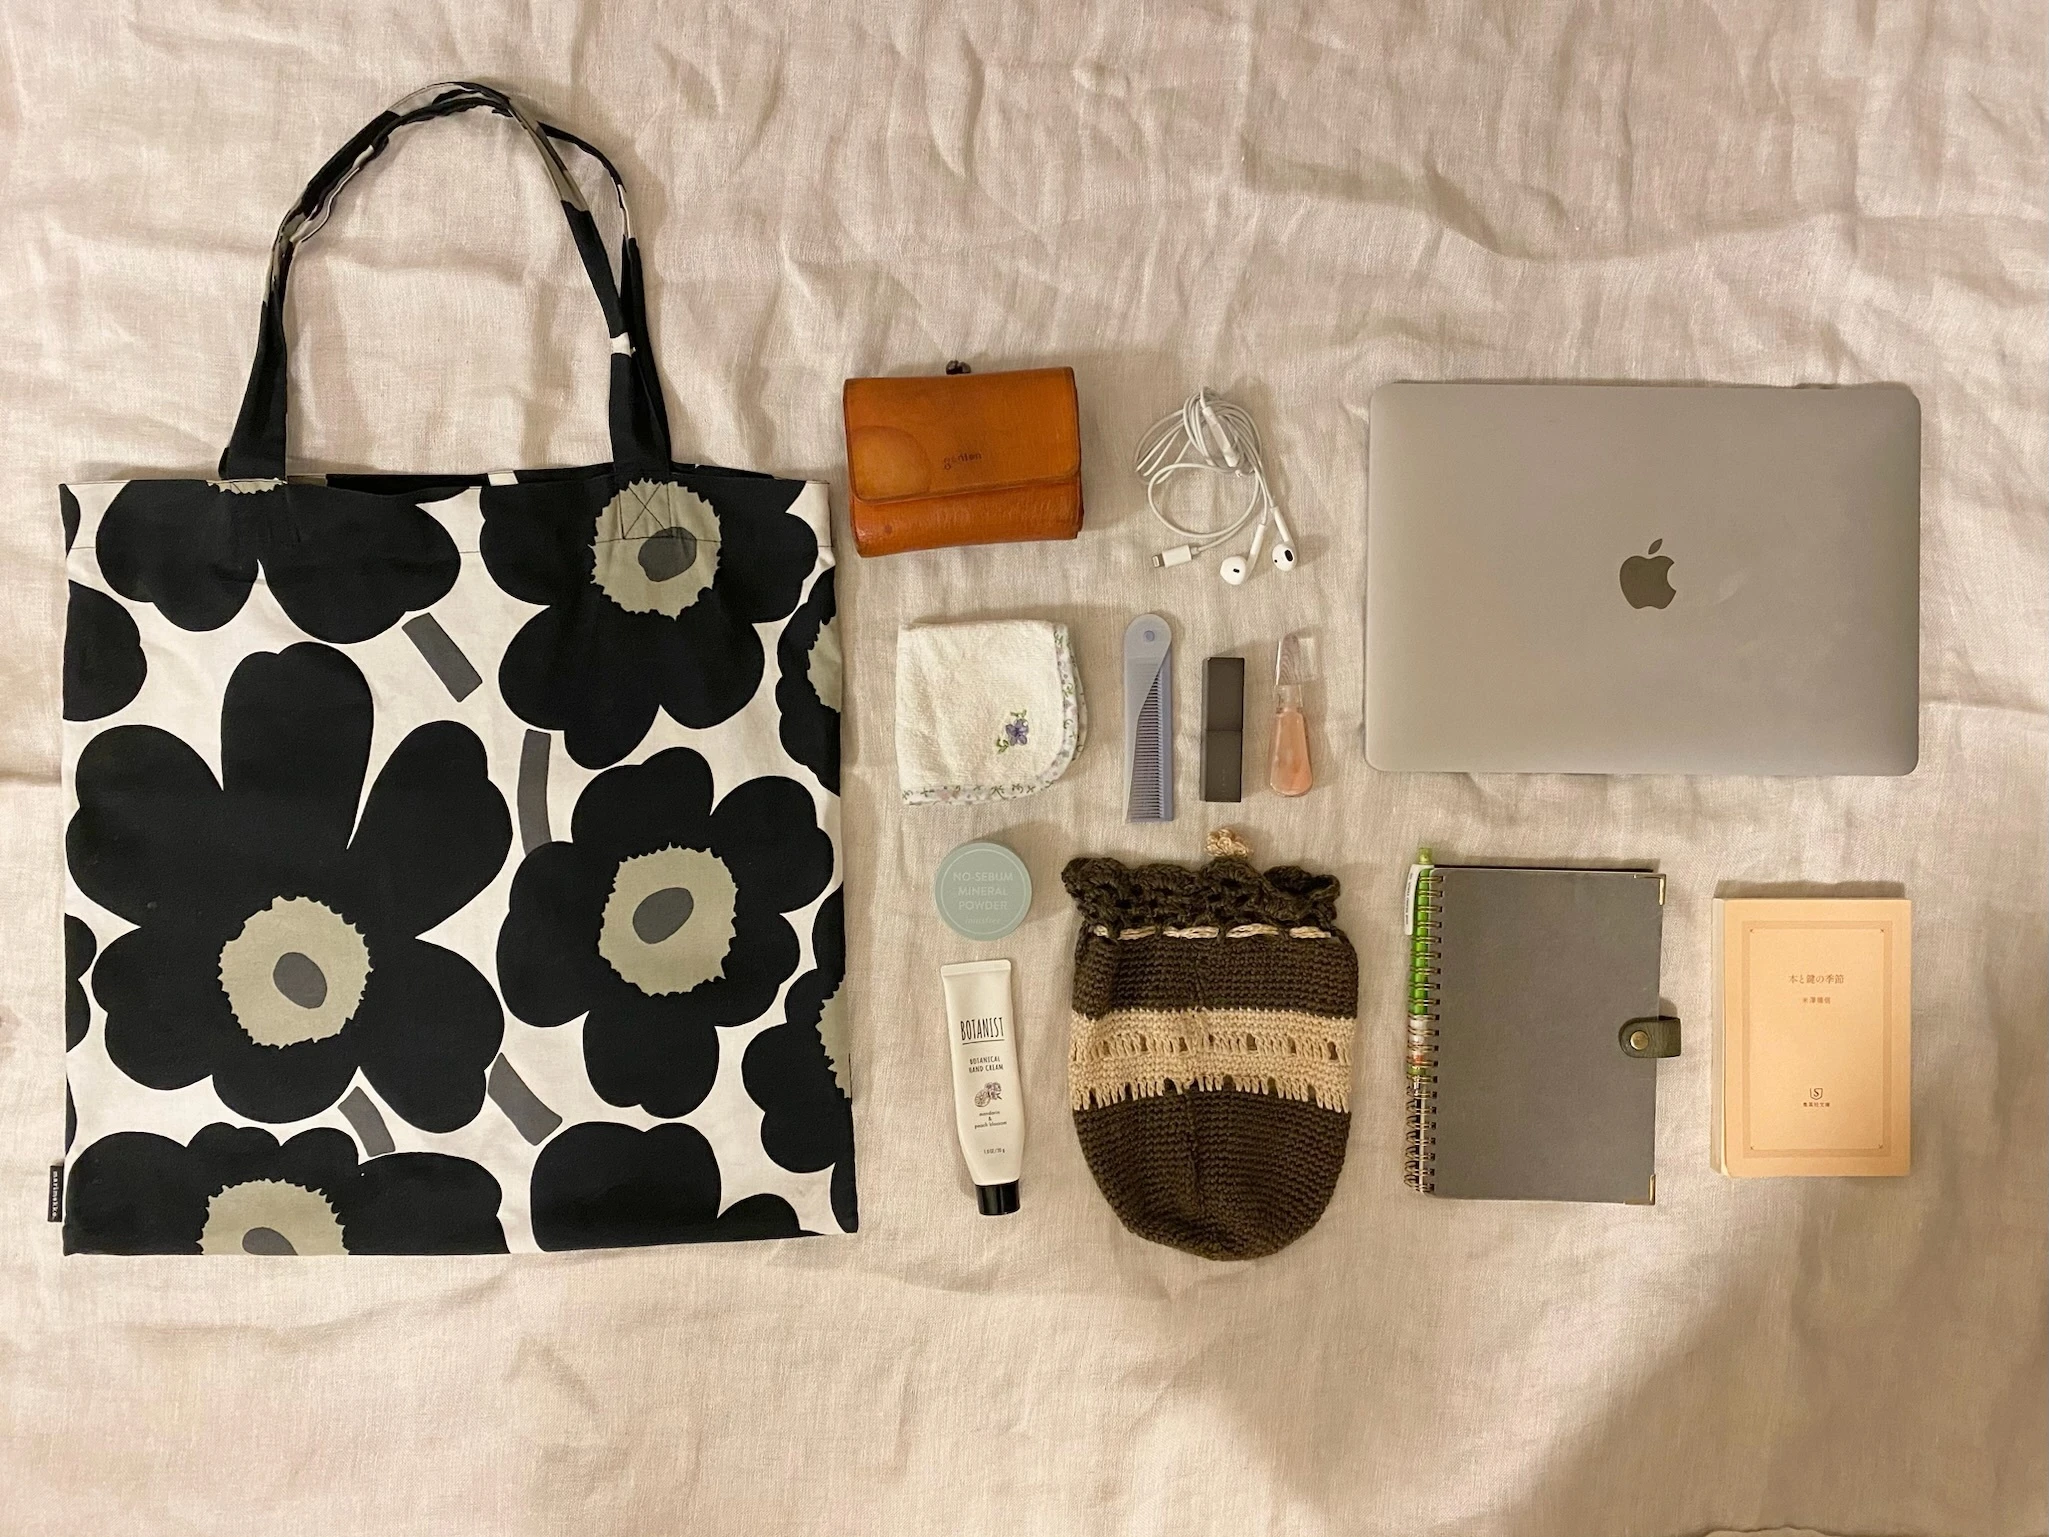 marimekkoのトートバッグ、gentenのお財布、ハンカチ、イヤホン、くし、threeのリップ、MacBook Air、ハンドクリーム、ノート